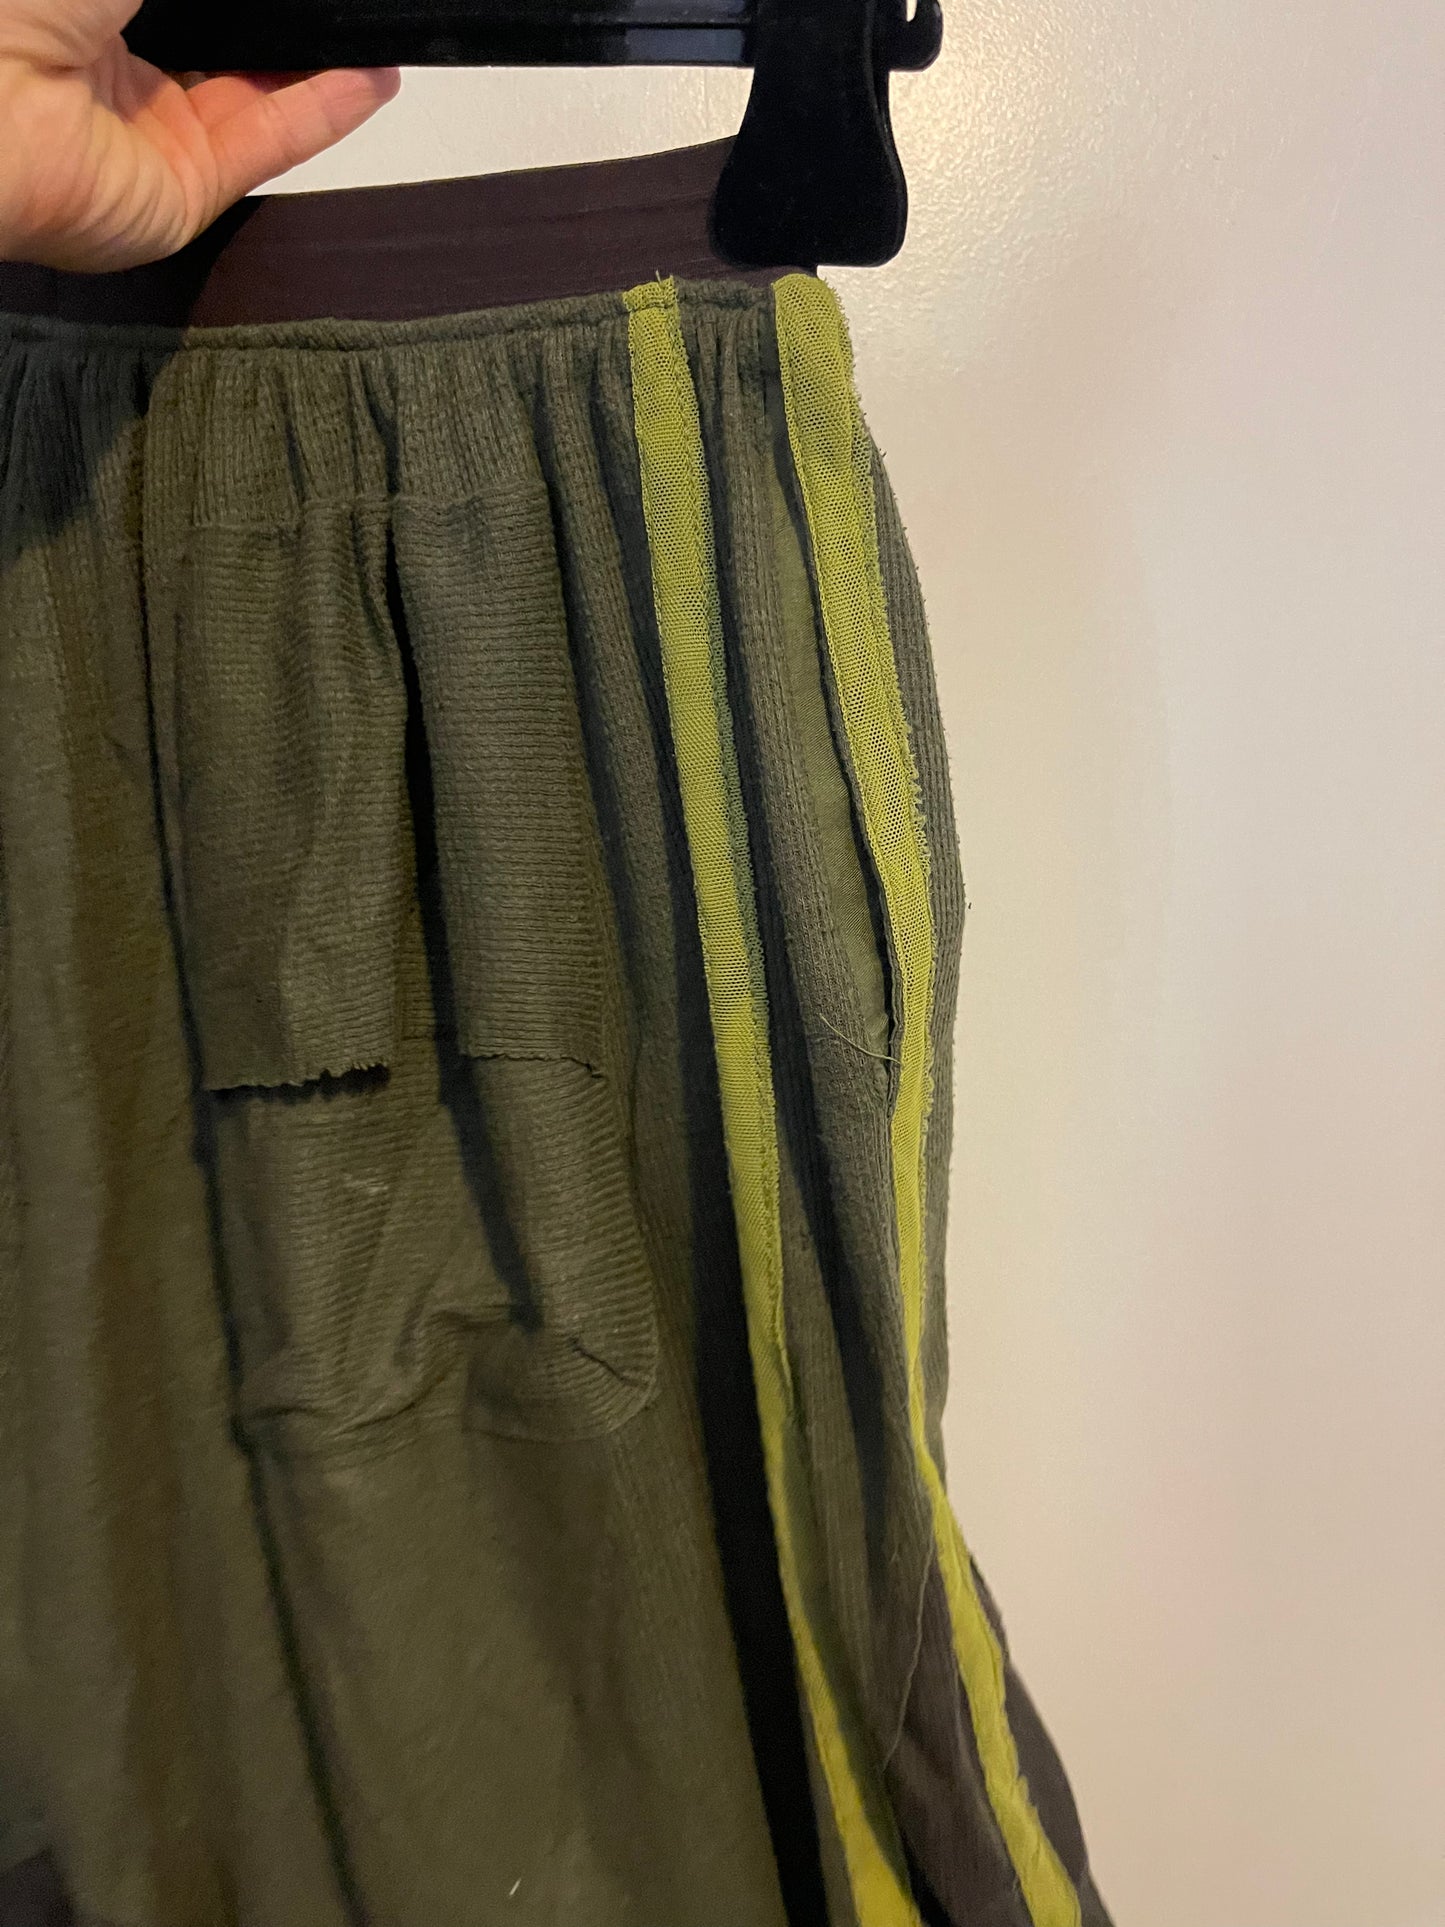 Kunai NYC adidas bootleg skirt